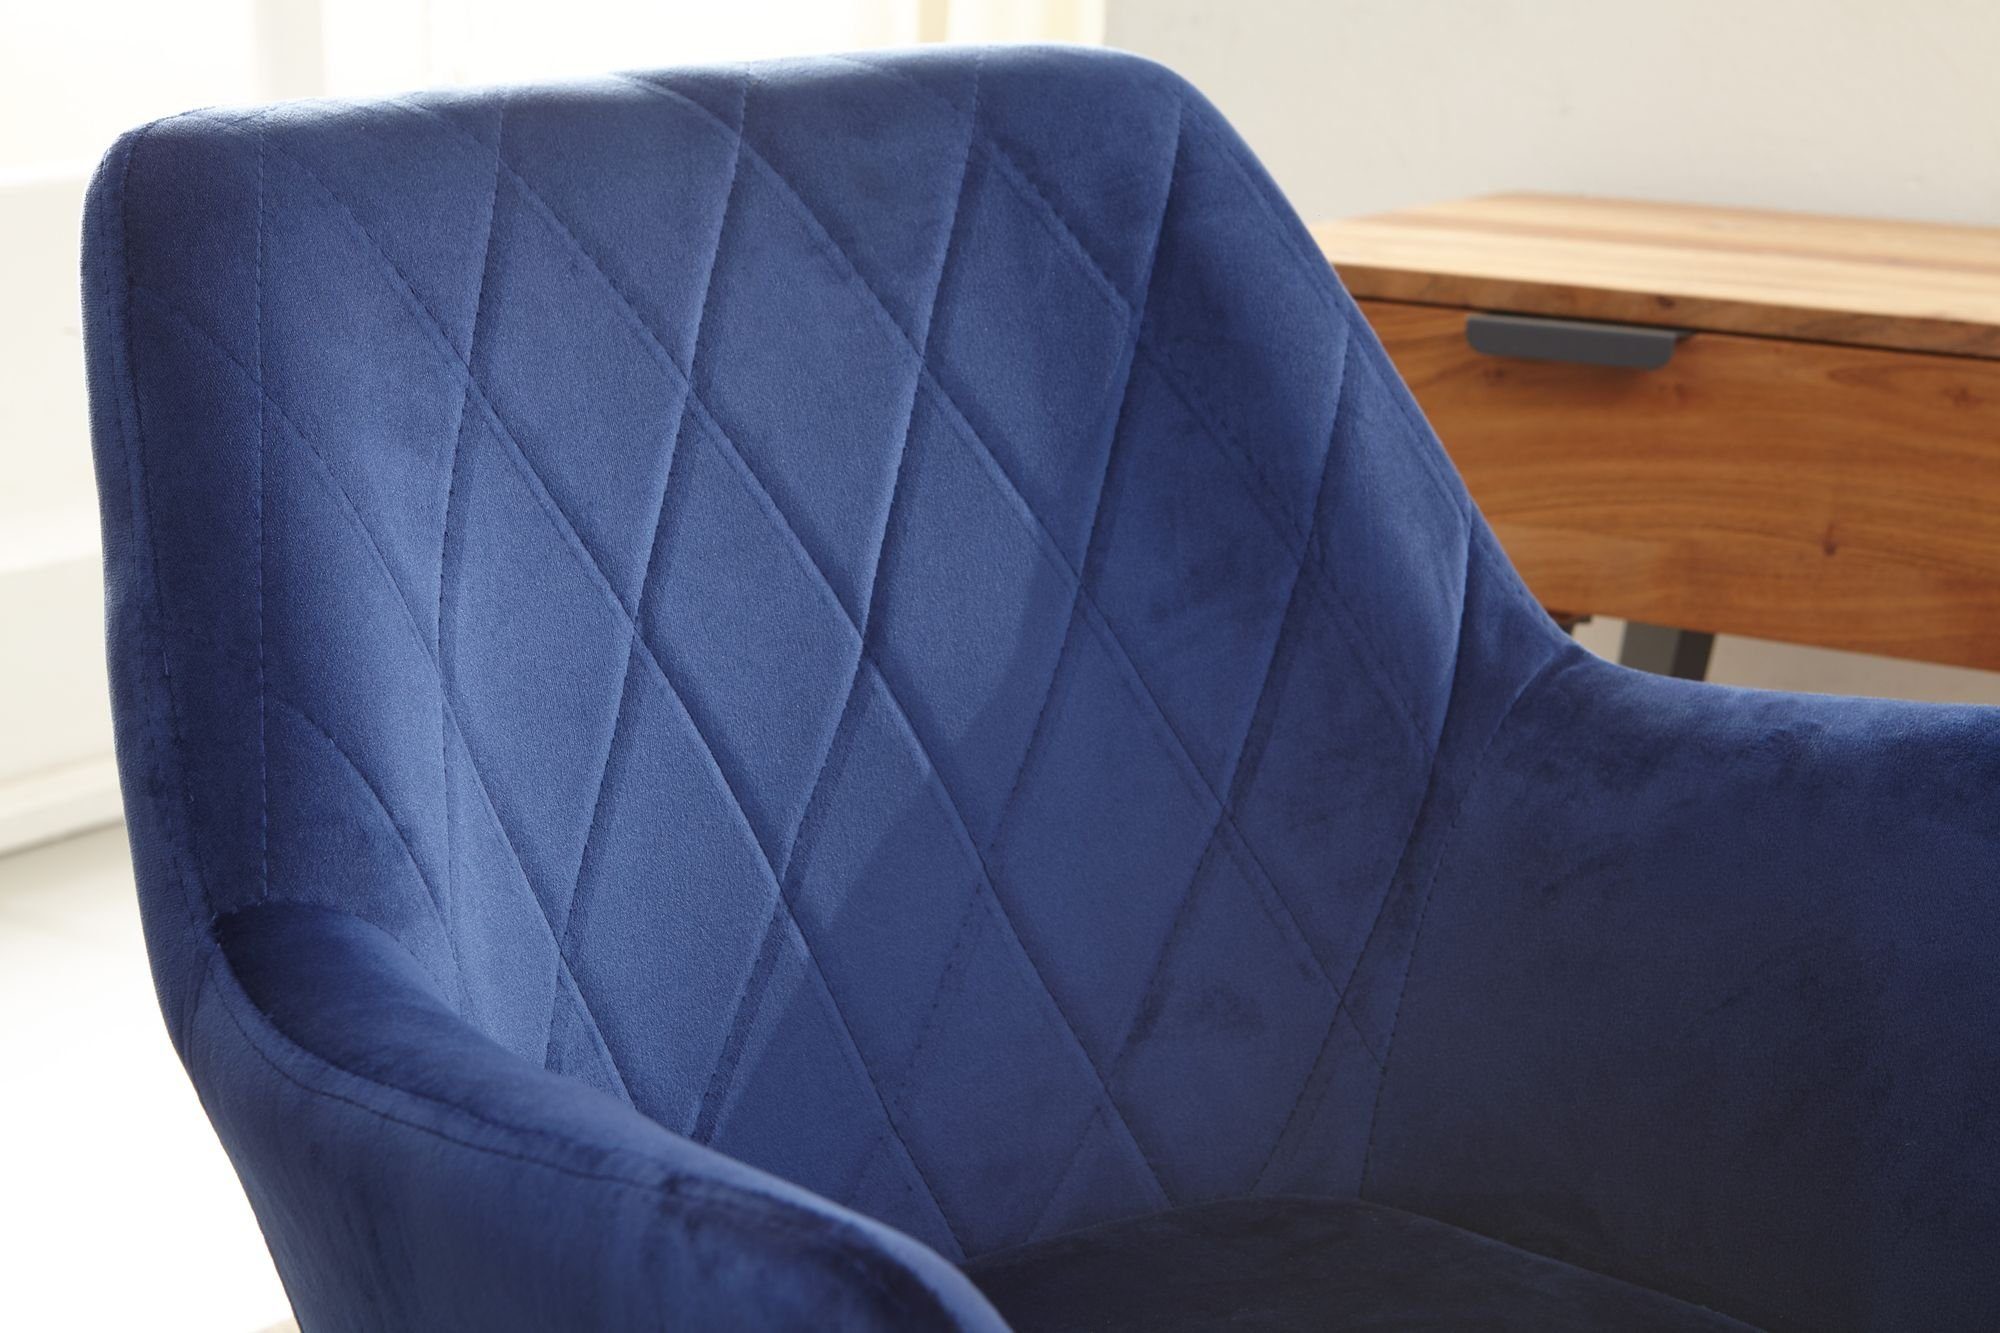 Homeoffice: Armlehnen Blau Blau mit Sessel-Drehstuhl Blau Loungesessel TANARO | - KADIMA | DESIGN dein Armlehnen, für